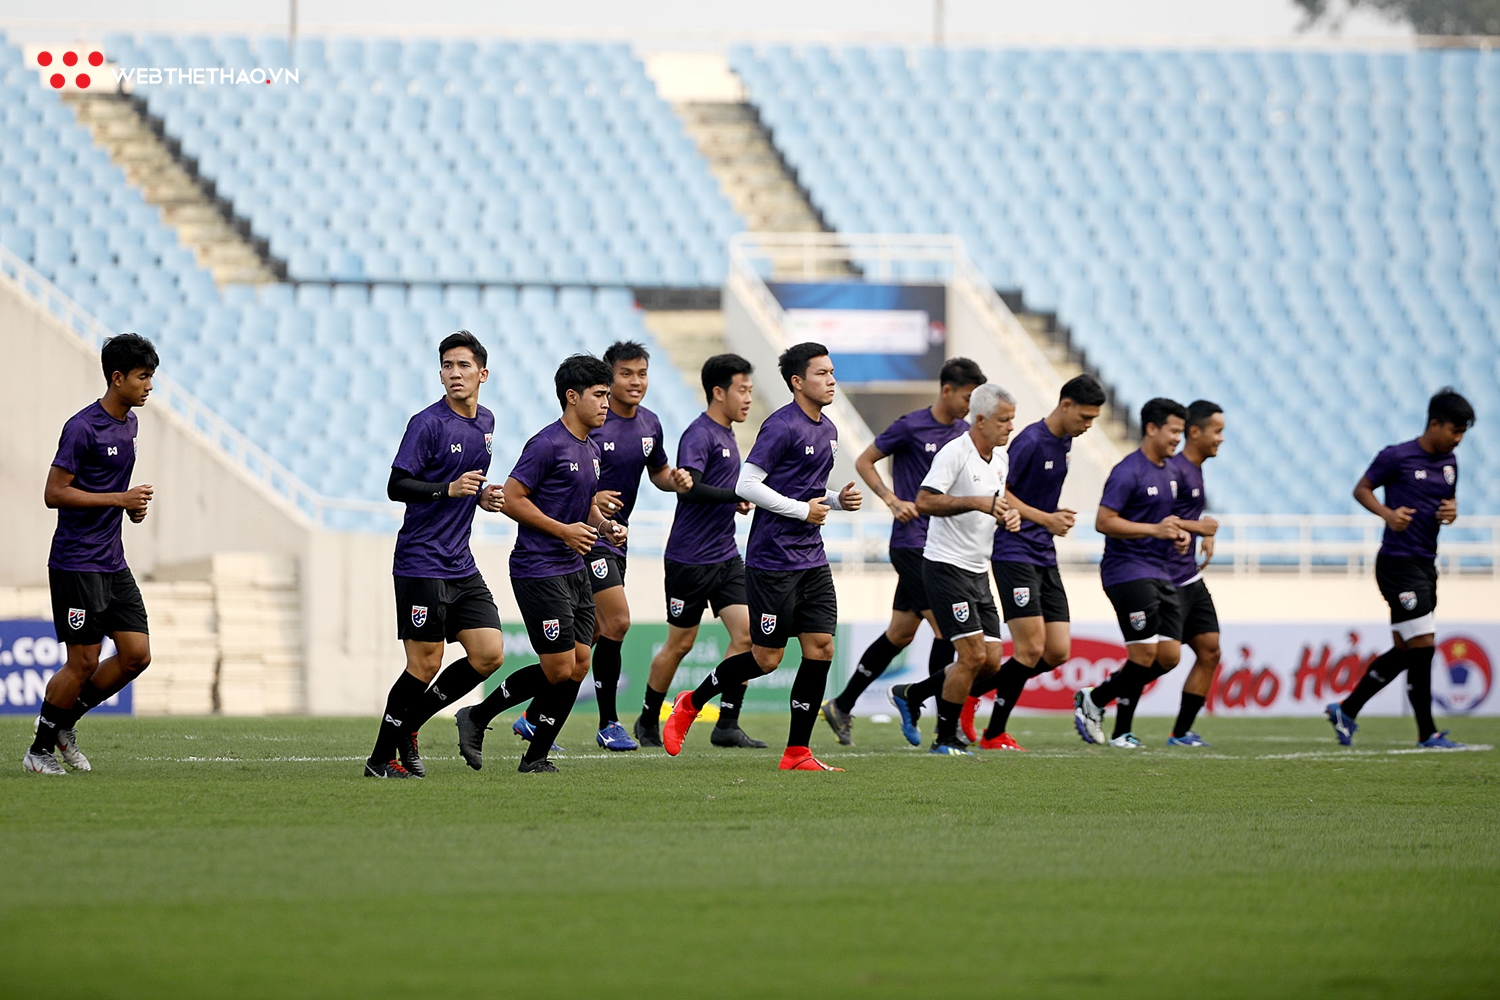 Chùm ảnh: Buổi tập đầu tiên của U23 Thái Lan trên sân Mỹ Đình